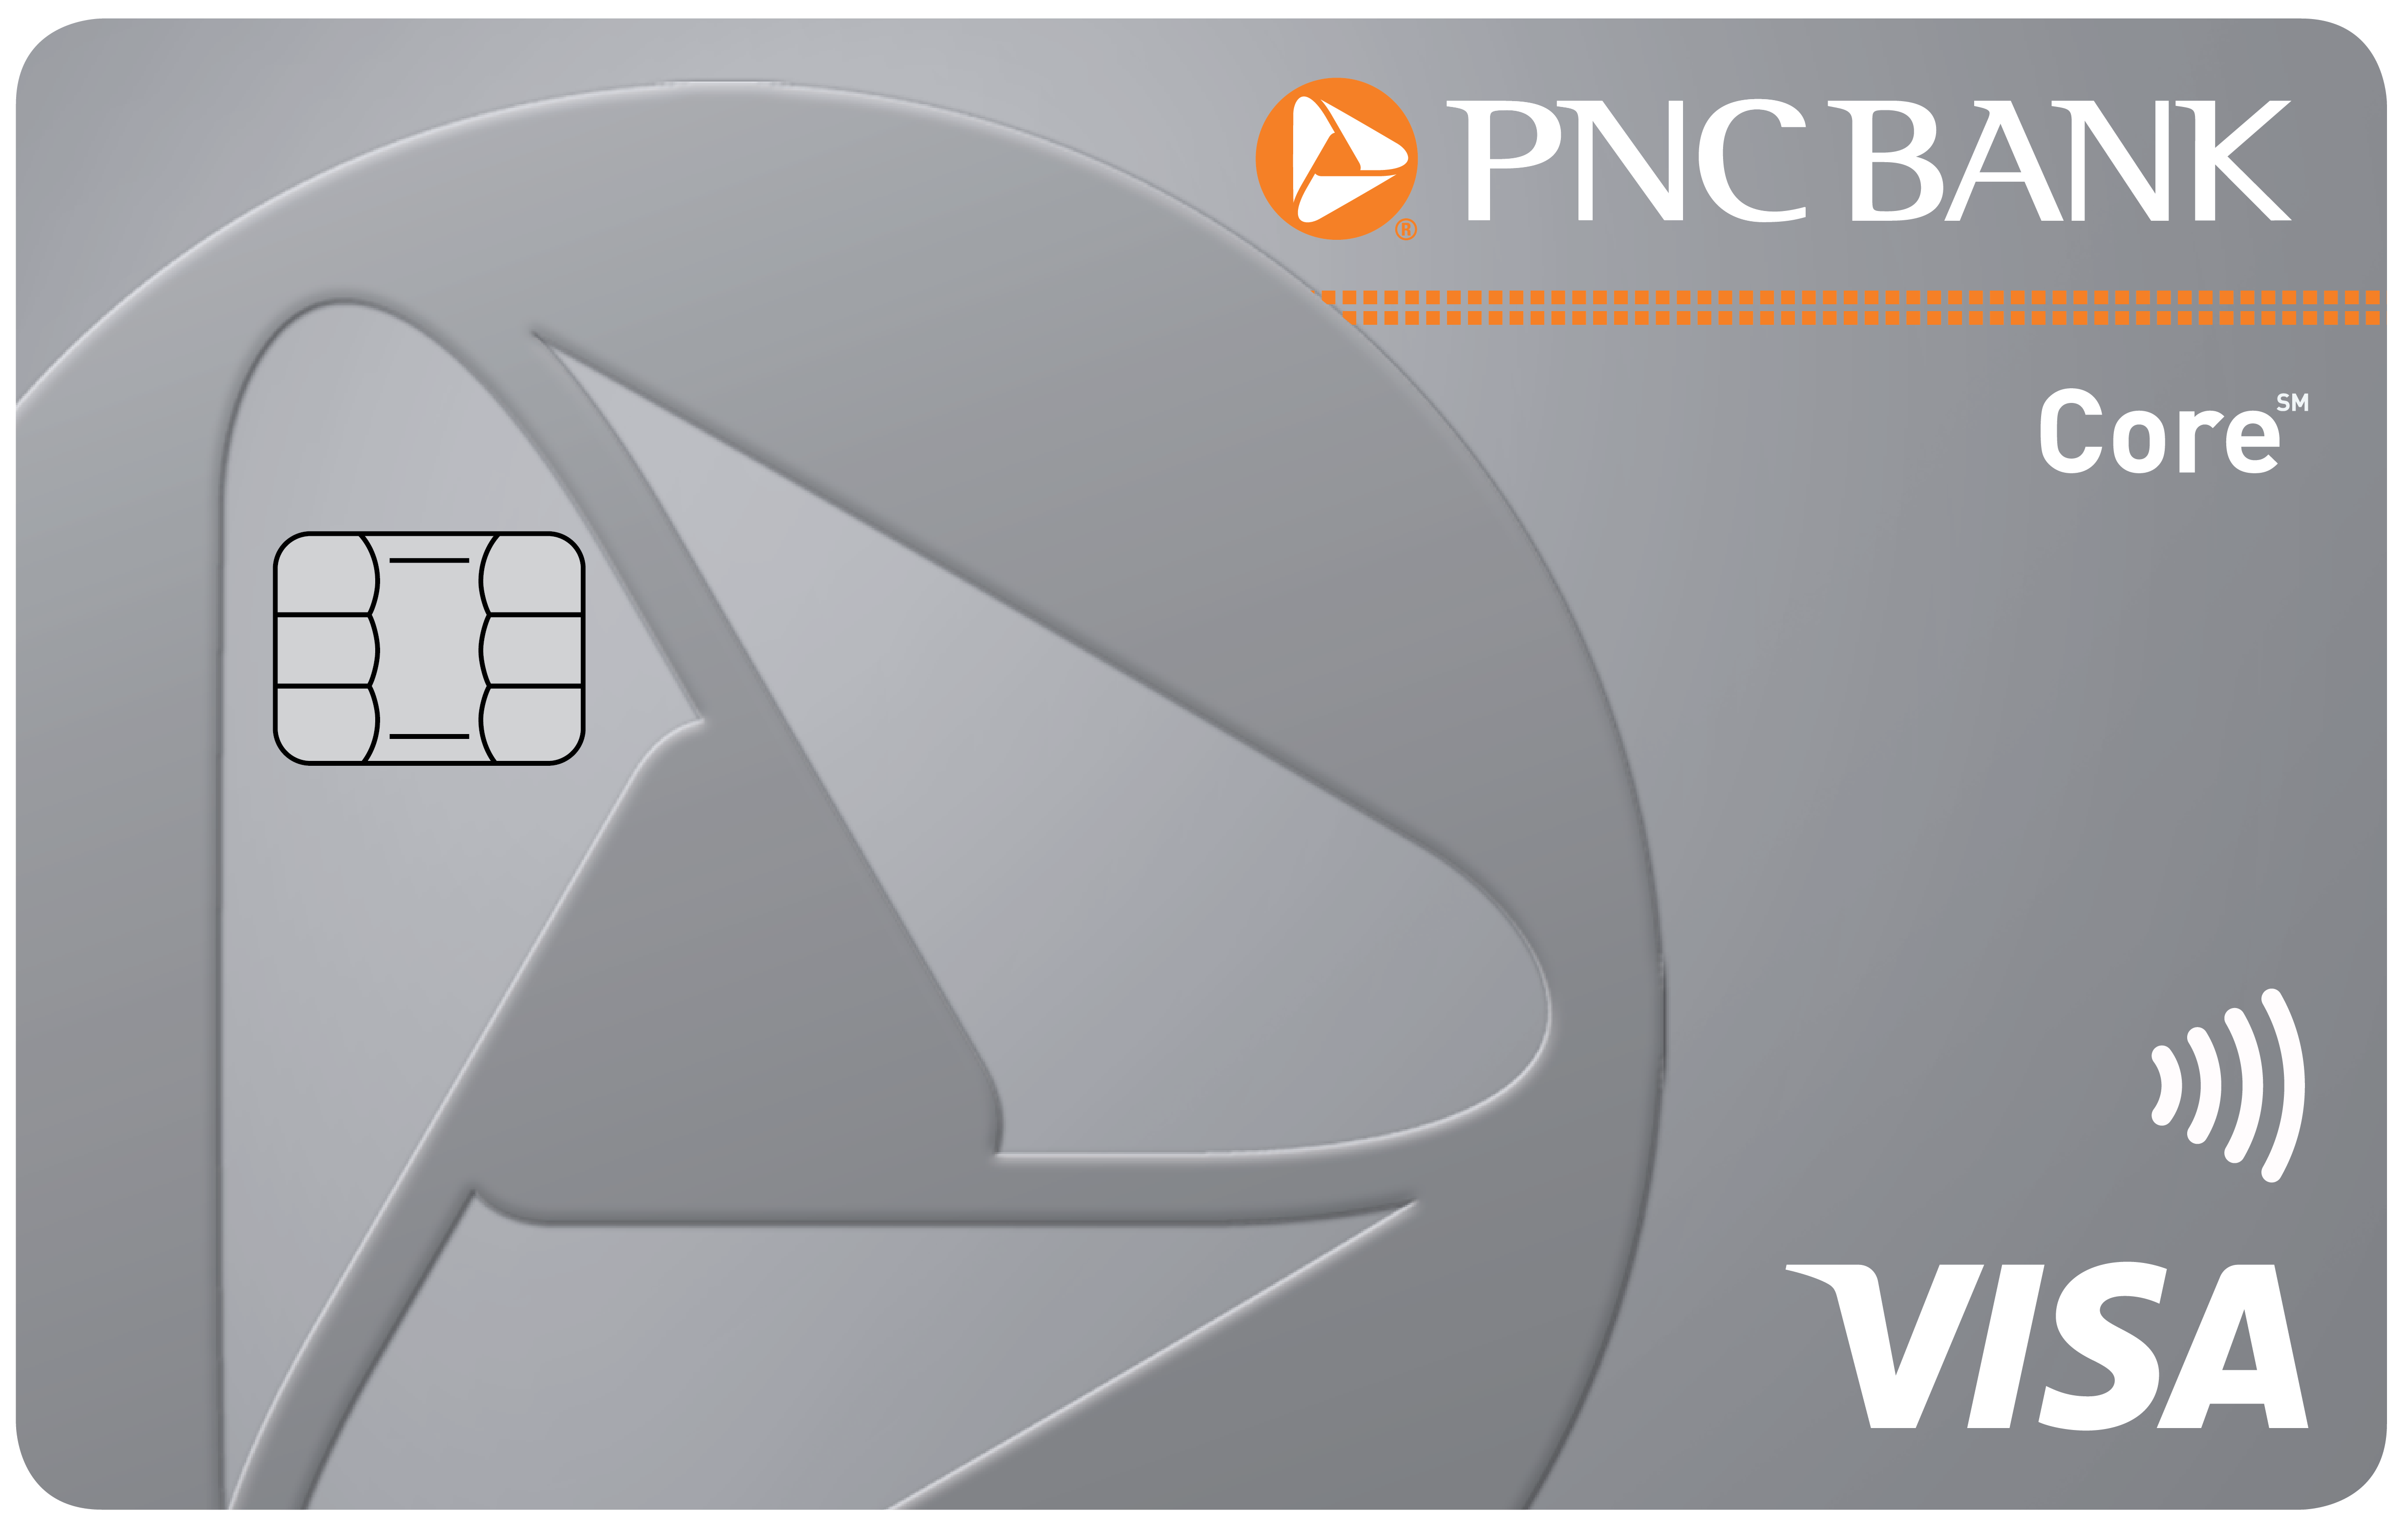 pnc travel debit card